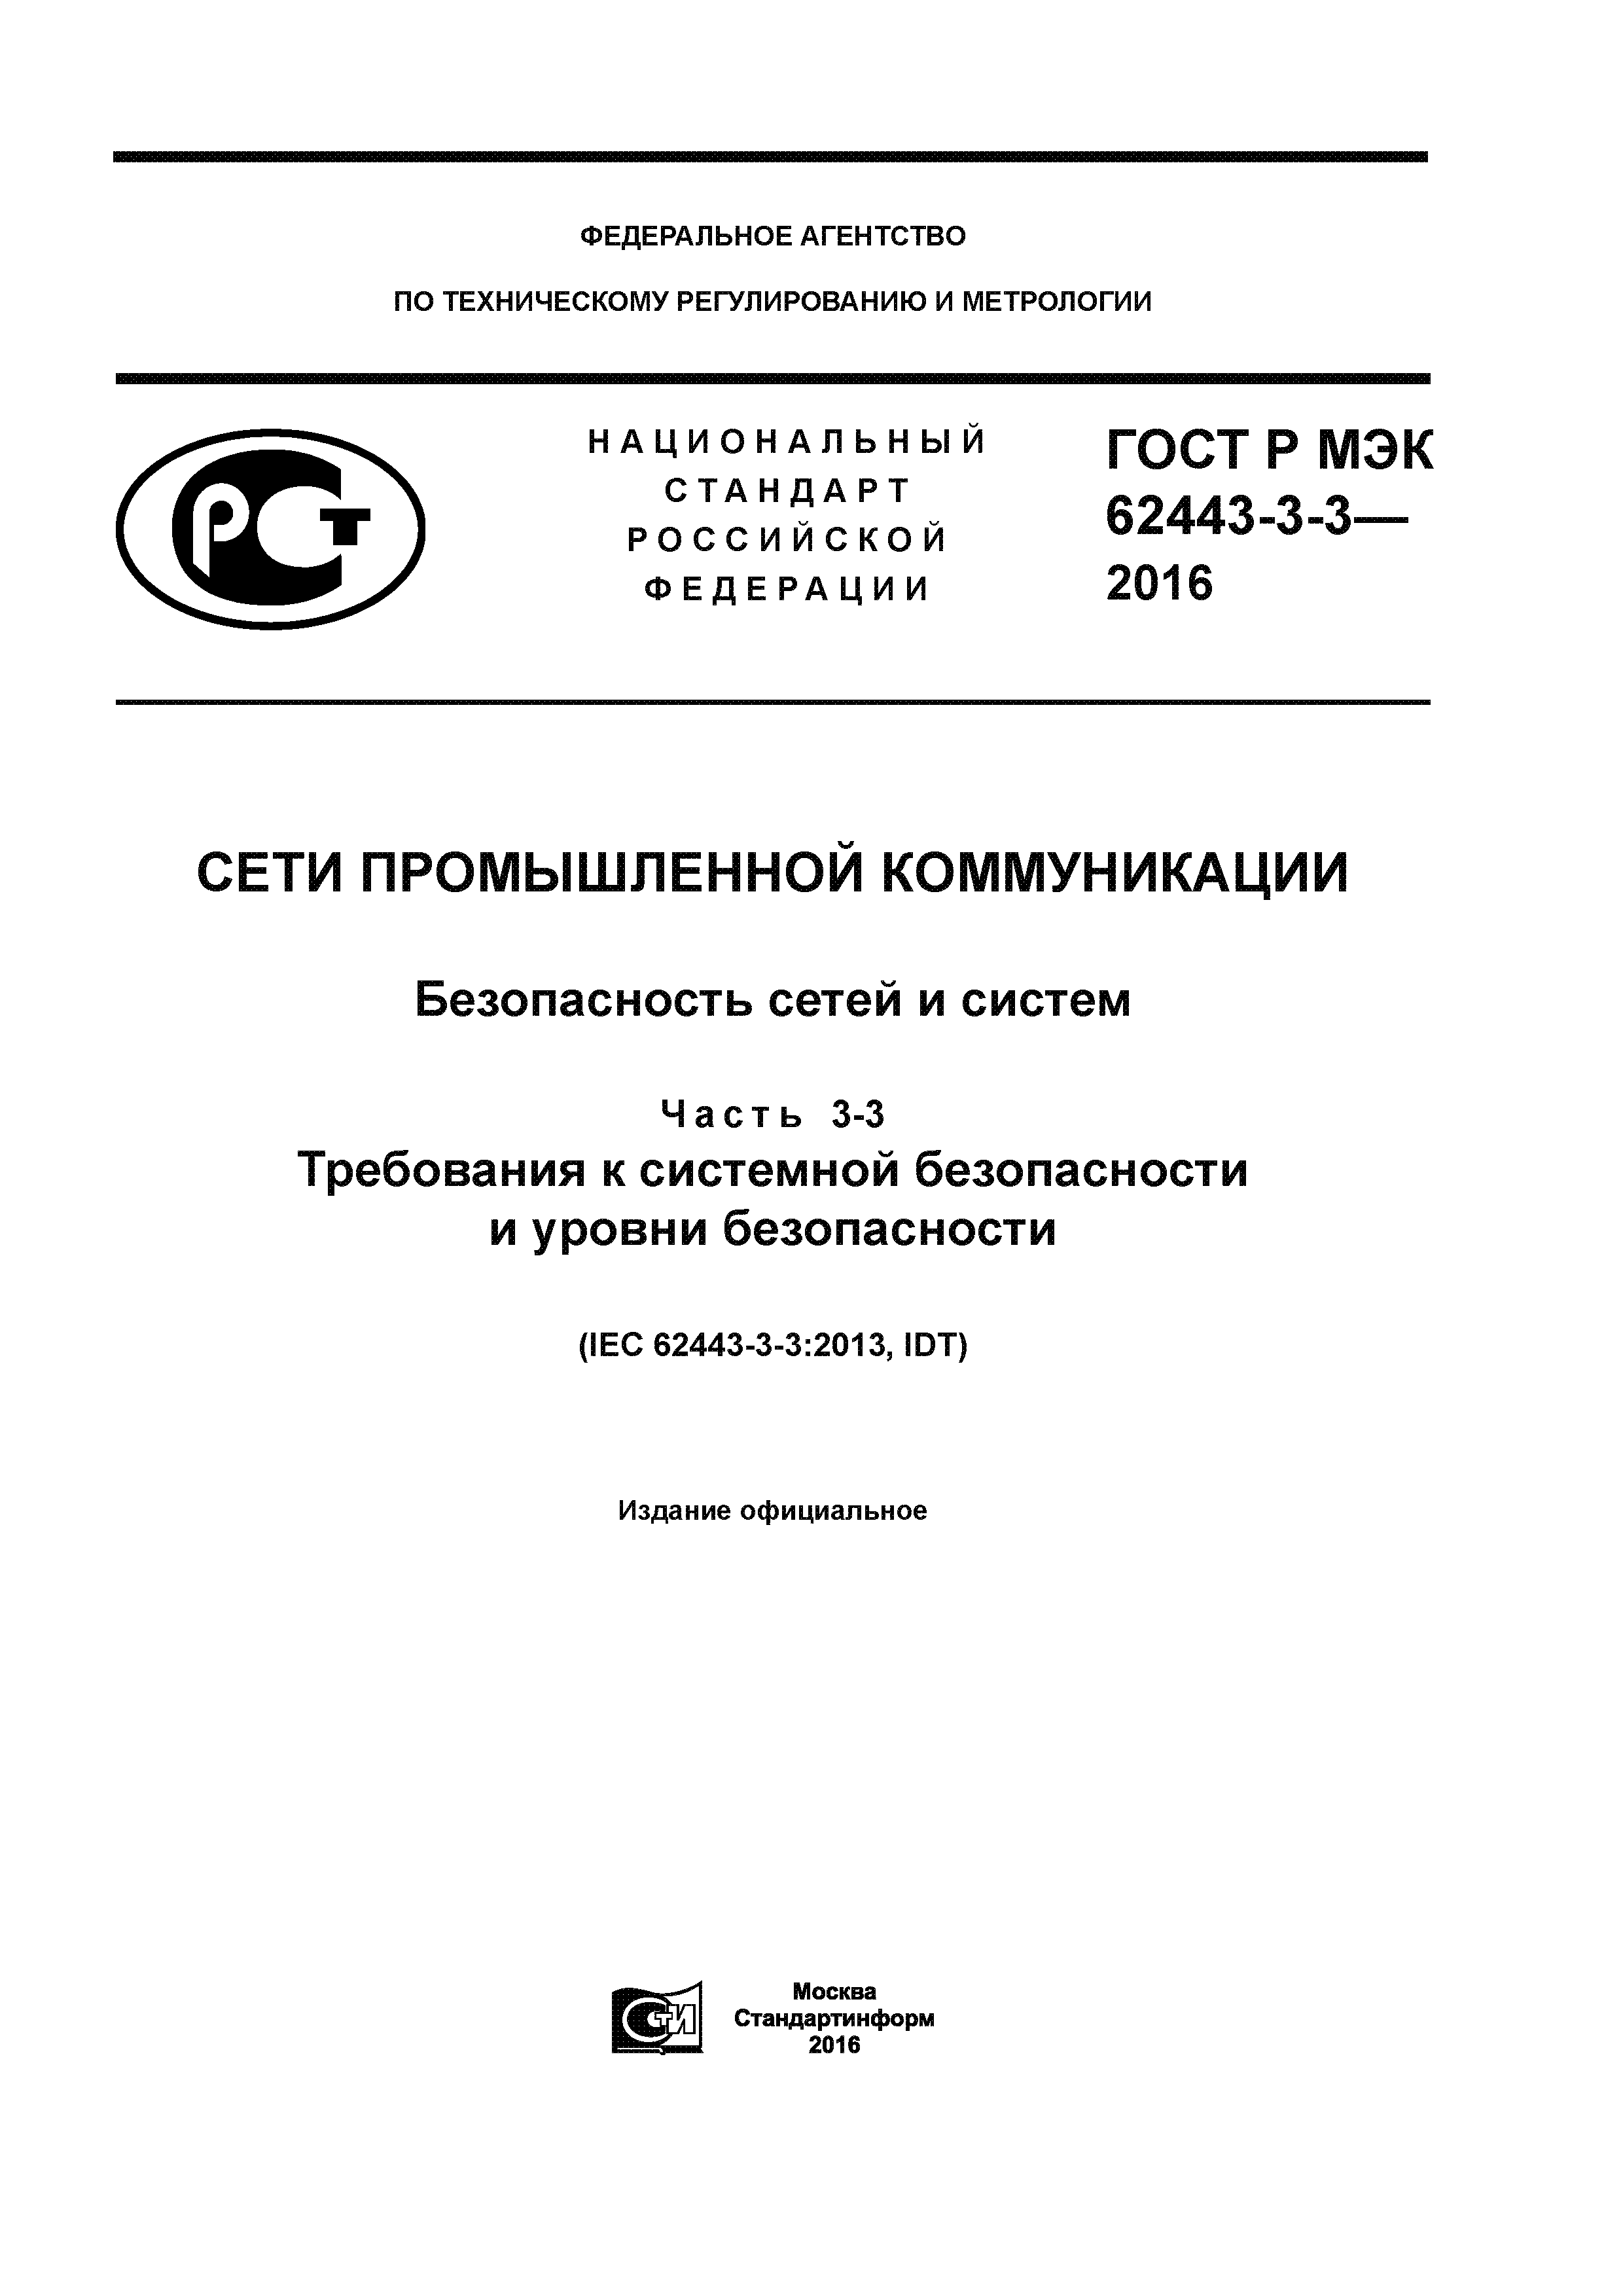 ГОСТ Р МЭК 62443-3-3-2016